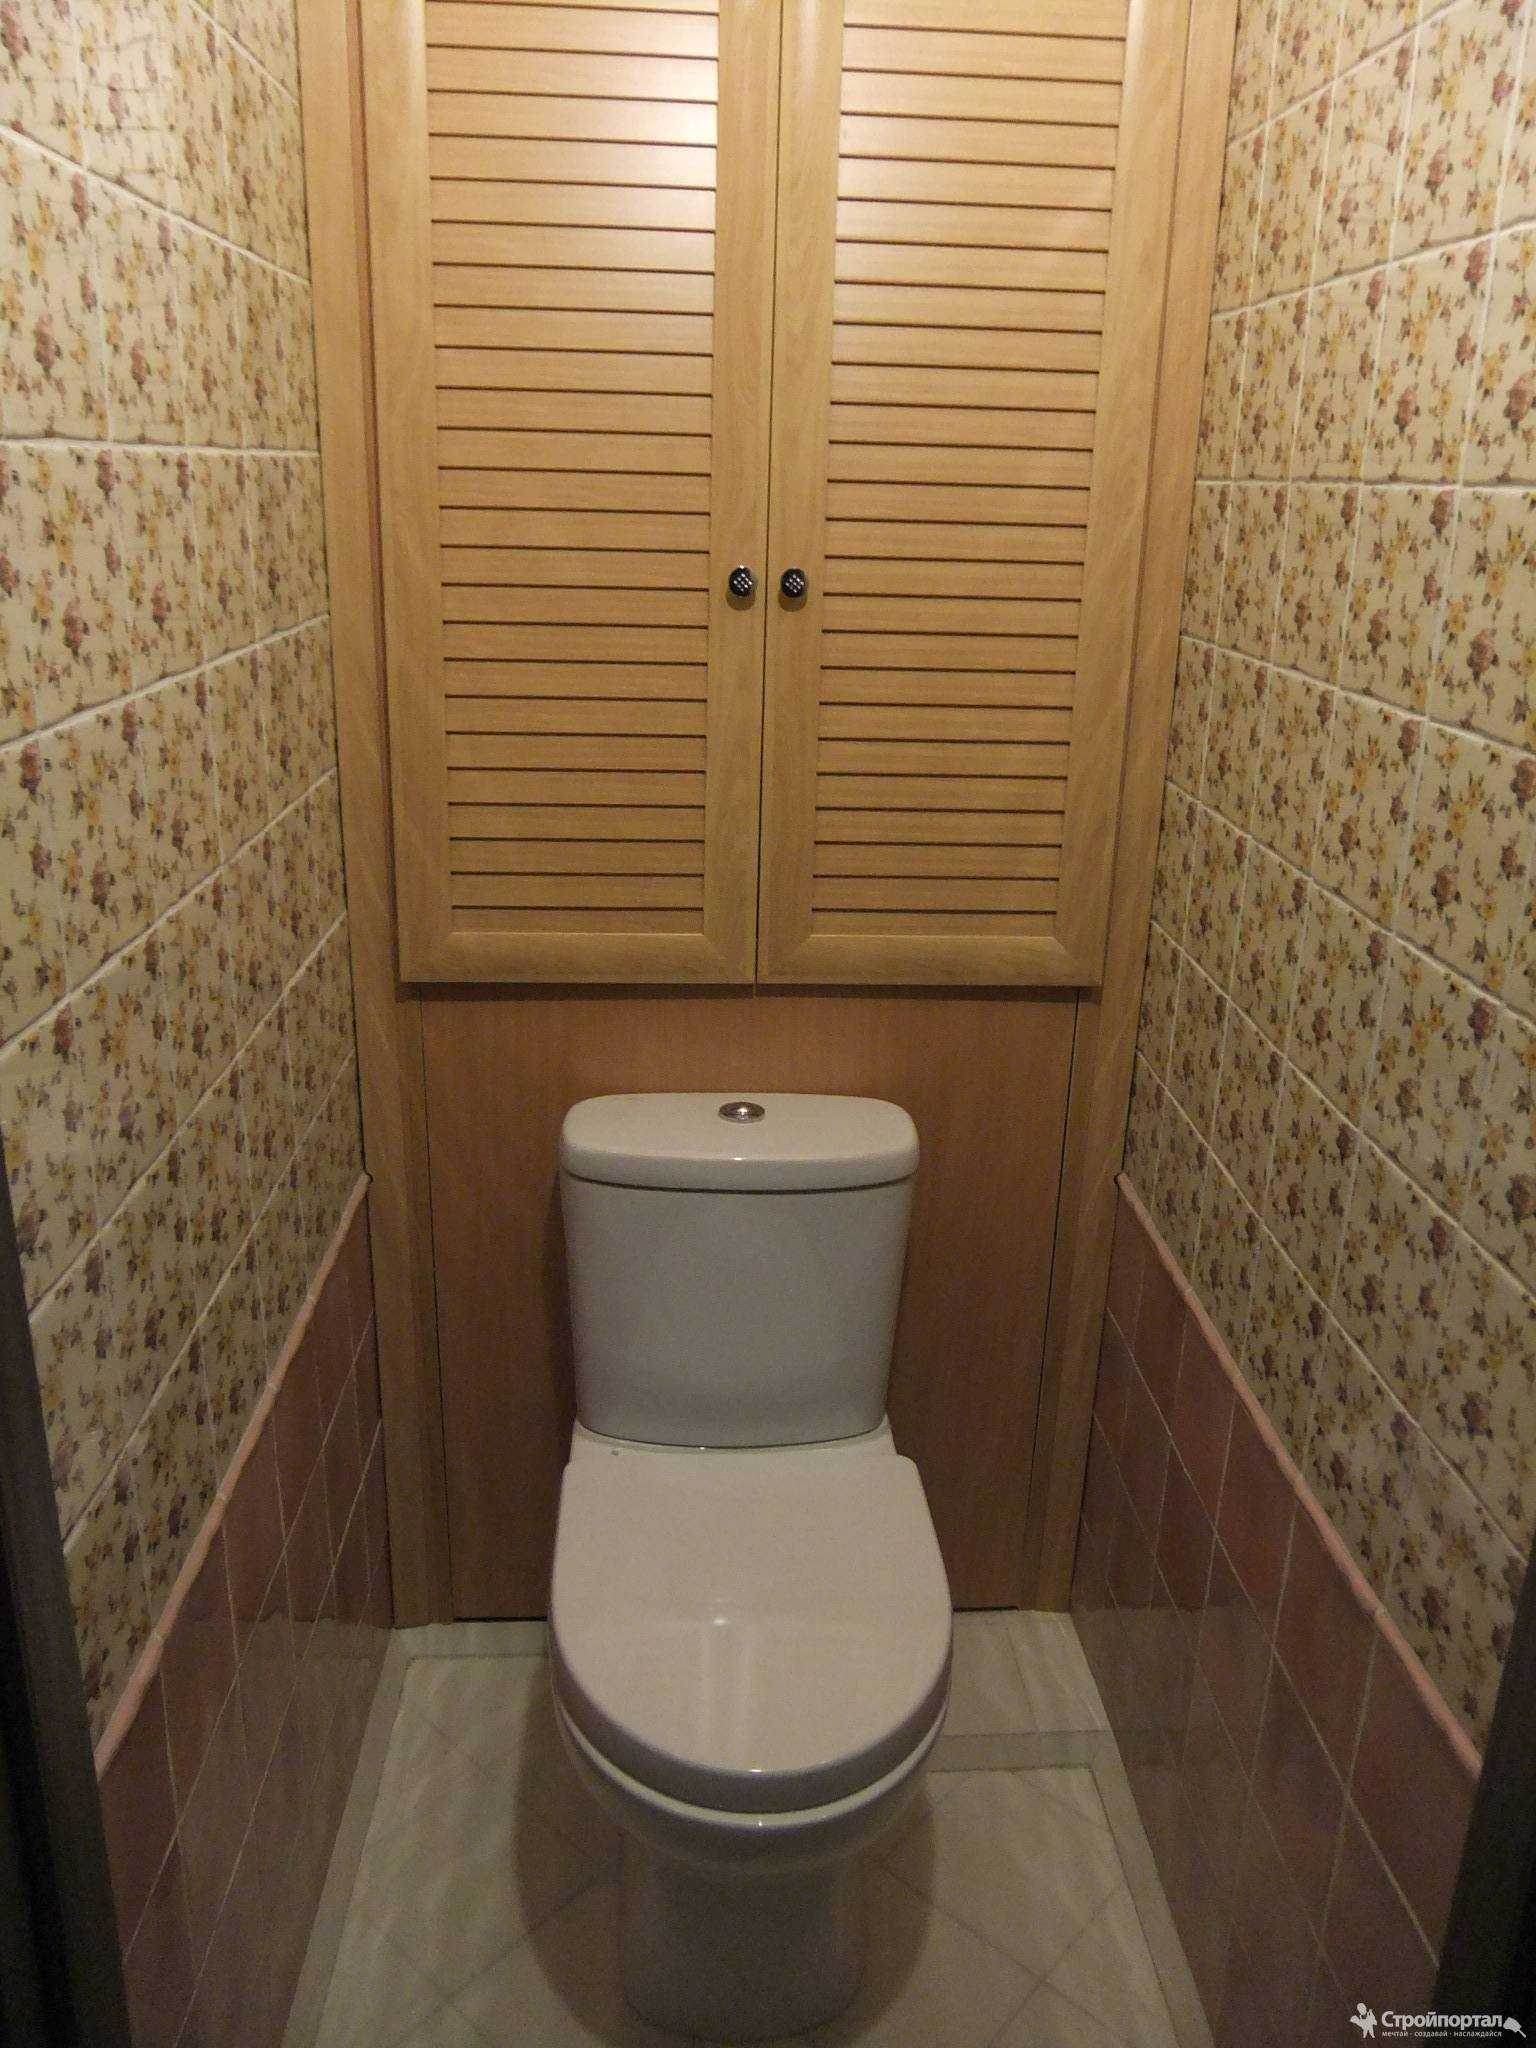 Как выбрать красивый и функциональный сантехнический шкаф в туалет (10 фото)